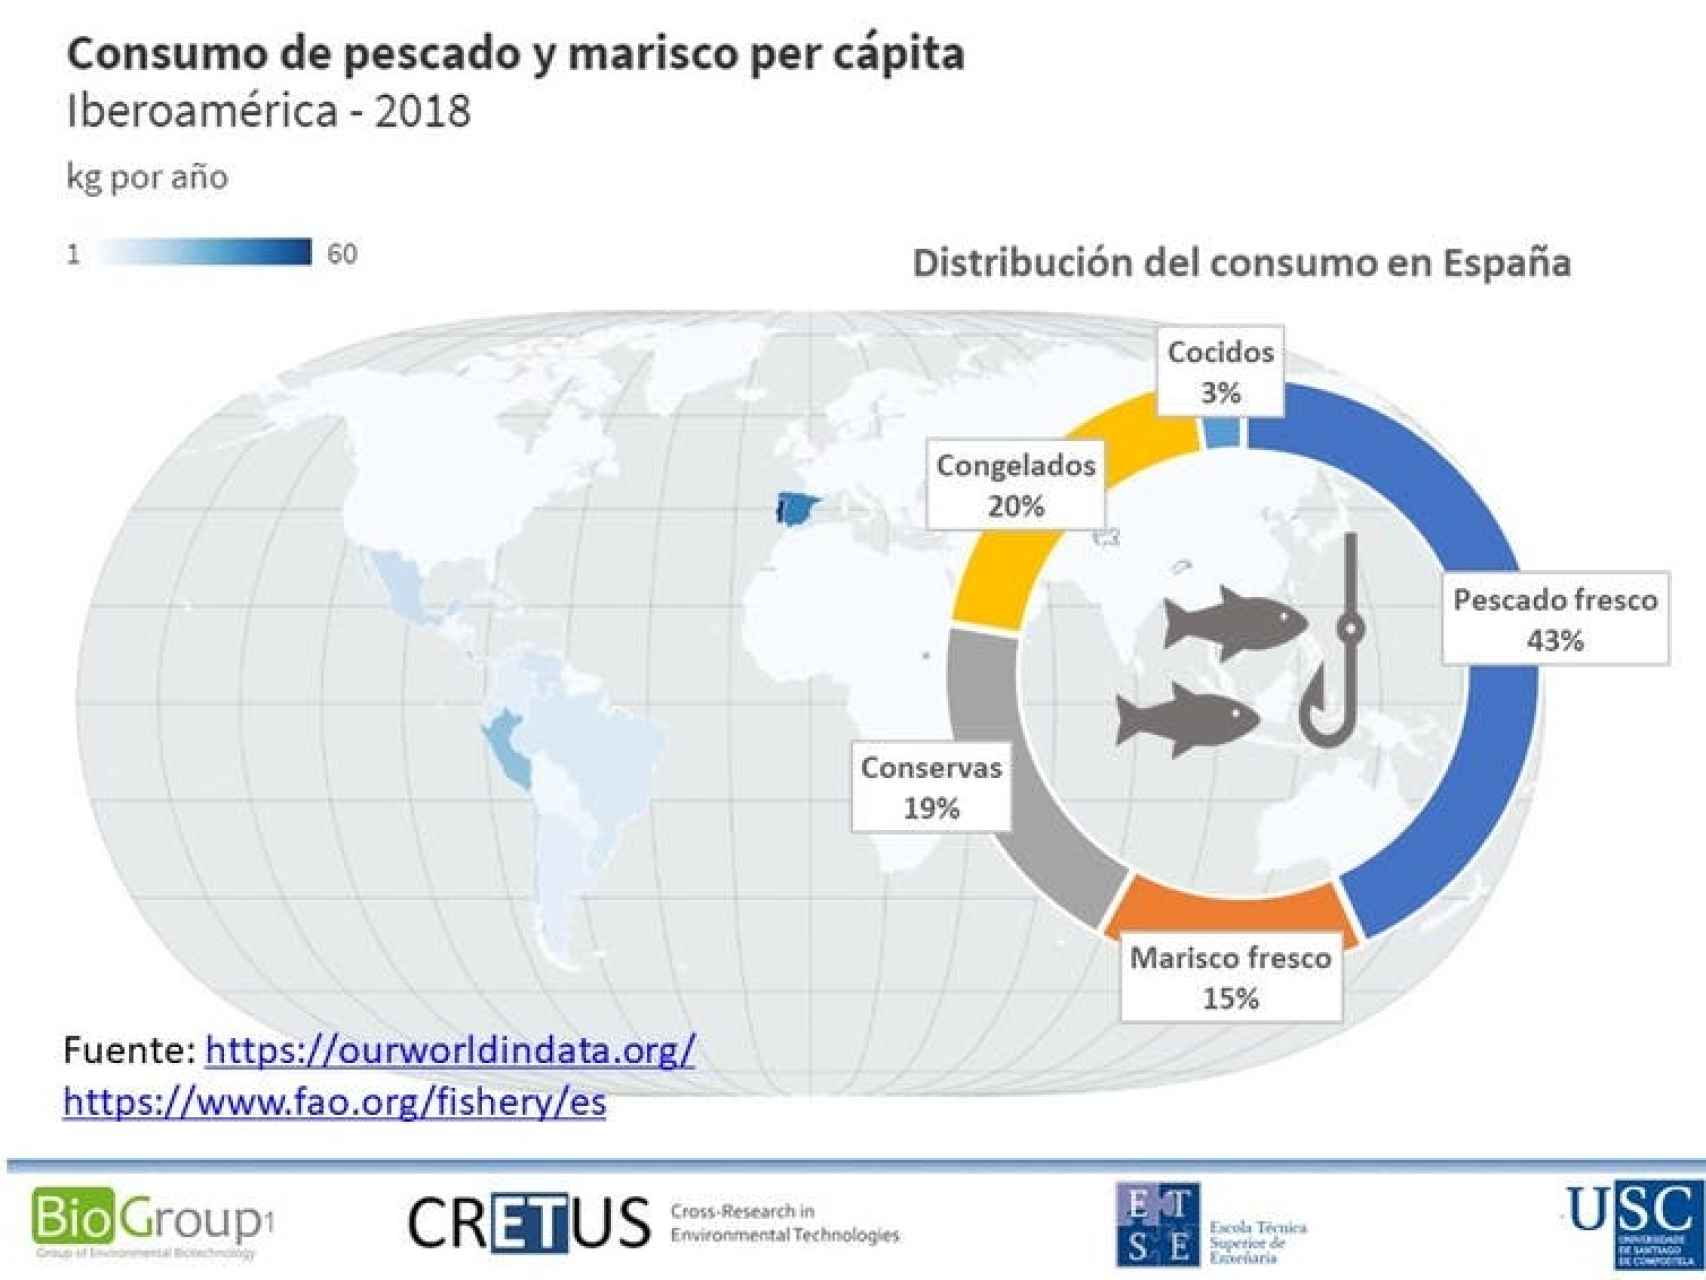 Consumo per cápita anual de pescado y marisco en los países iberoamericanos